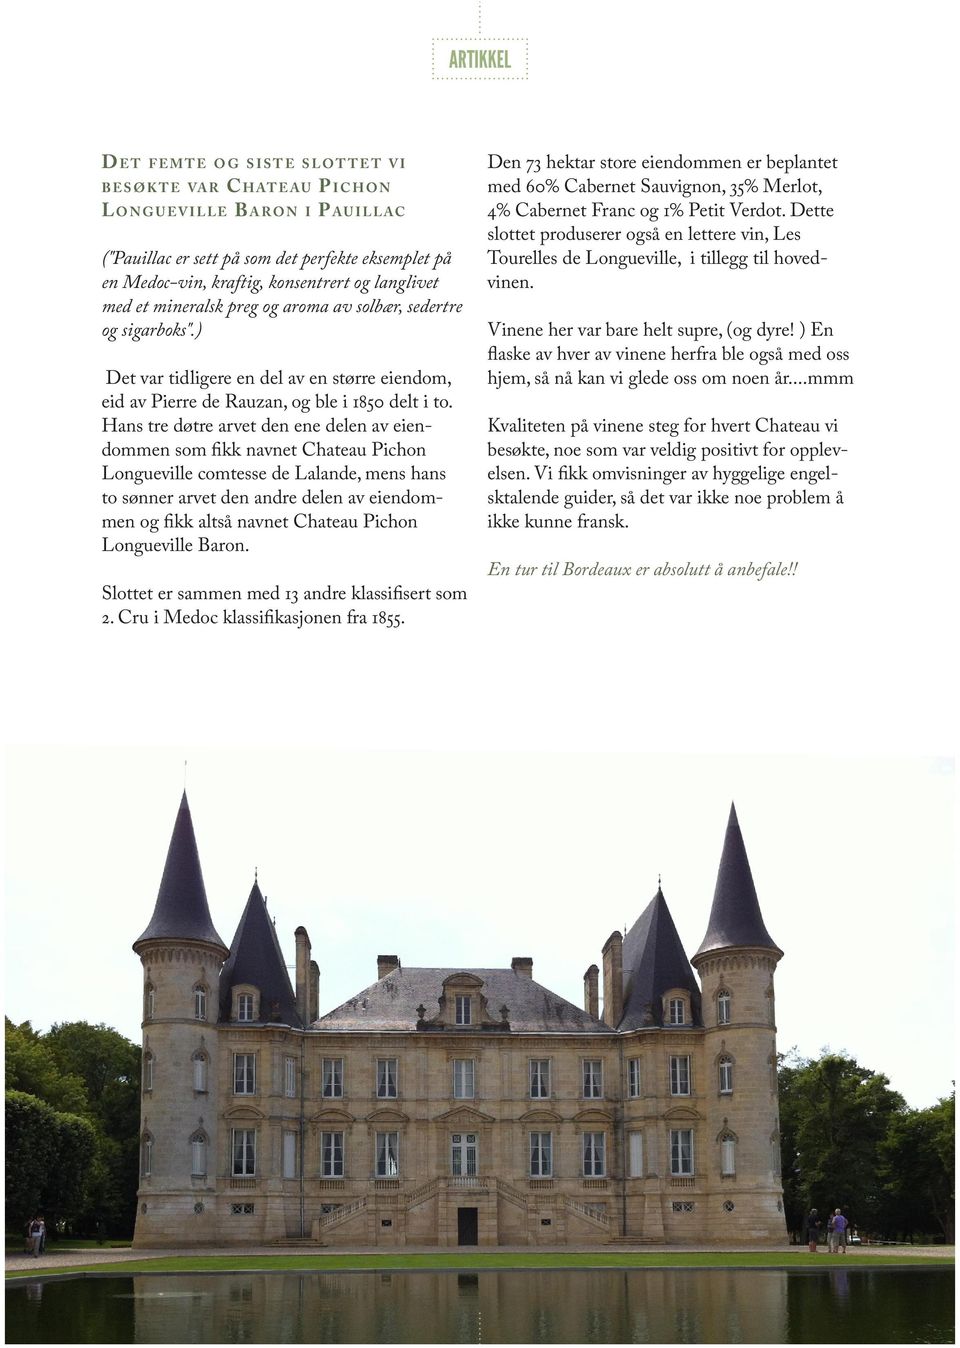 Hans tre døtre arvet den ene delen av eiendommen som fikk navnet Chateau Pichon Longueville comtesse de Lalande, mens hans to sønner arvet den andre delen av eiendommen og fikk altså navnet Chateau